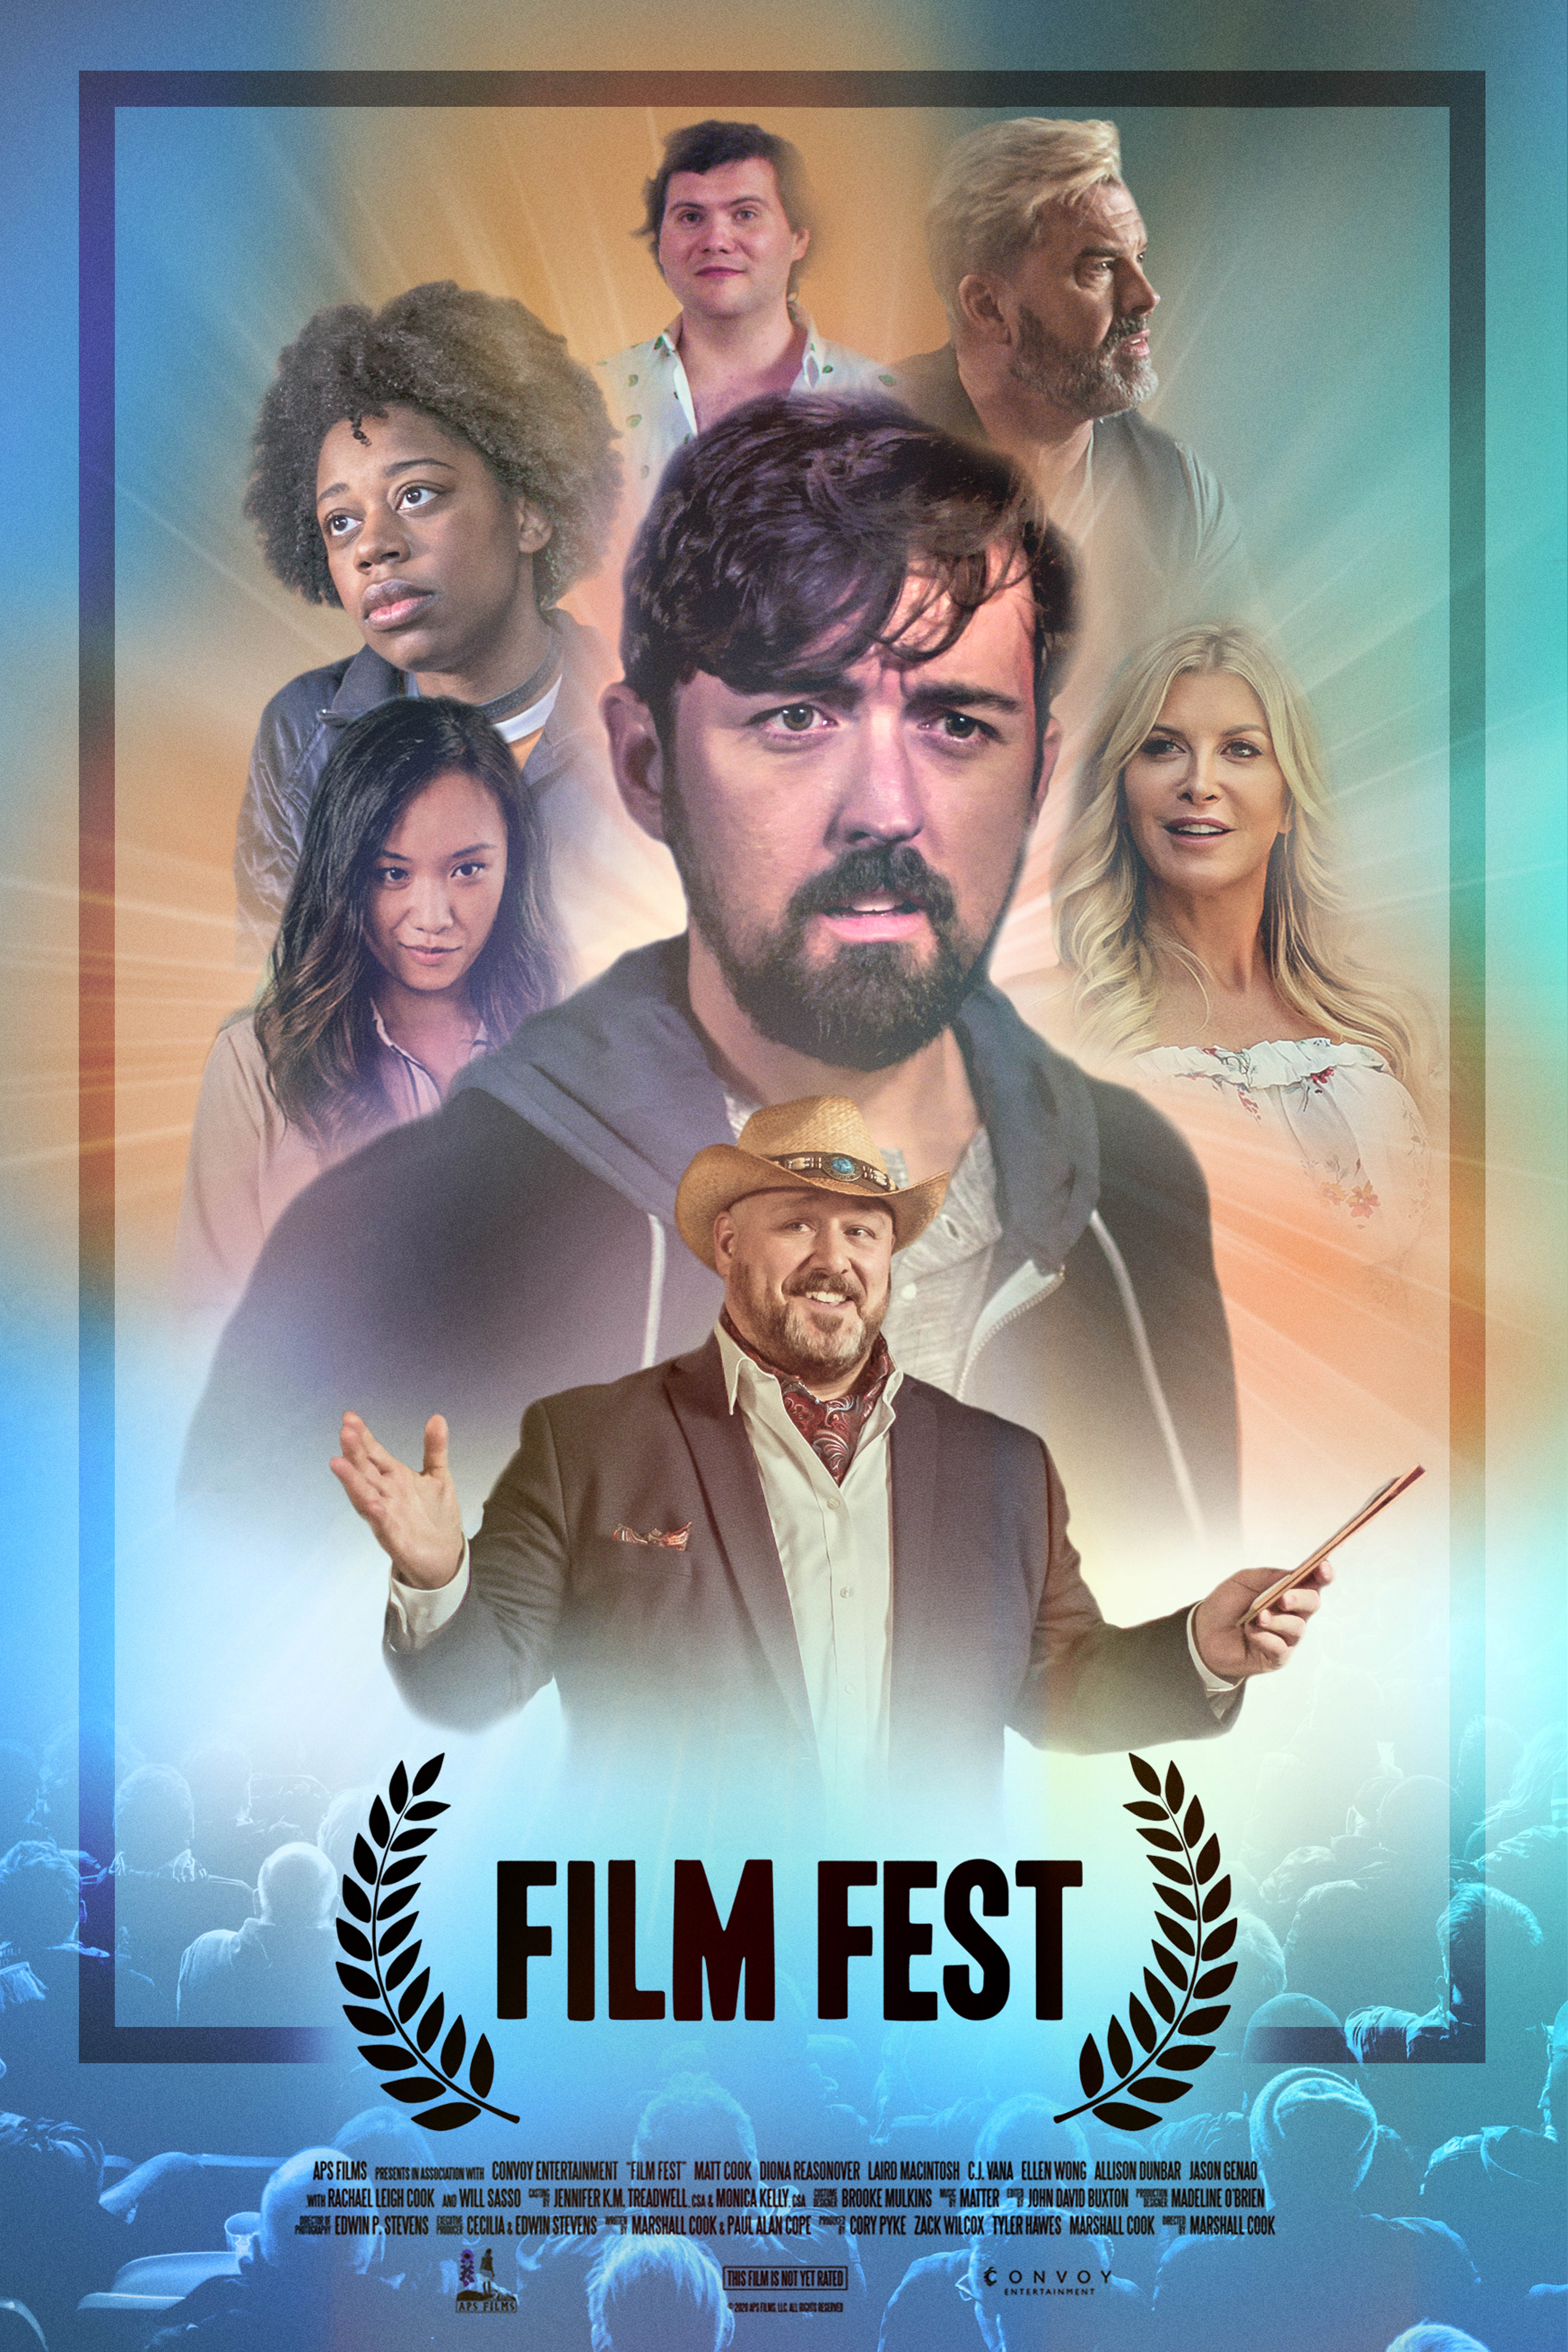     Film Fest